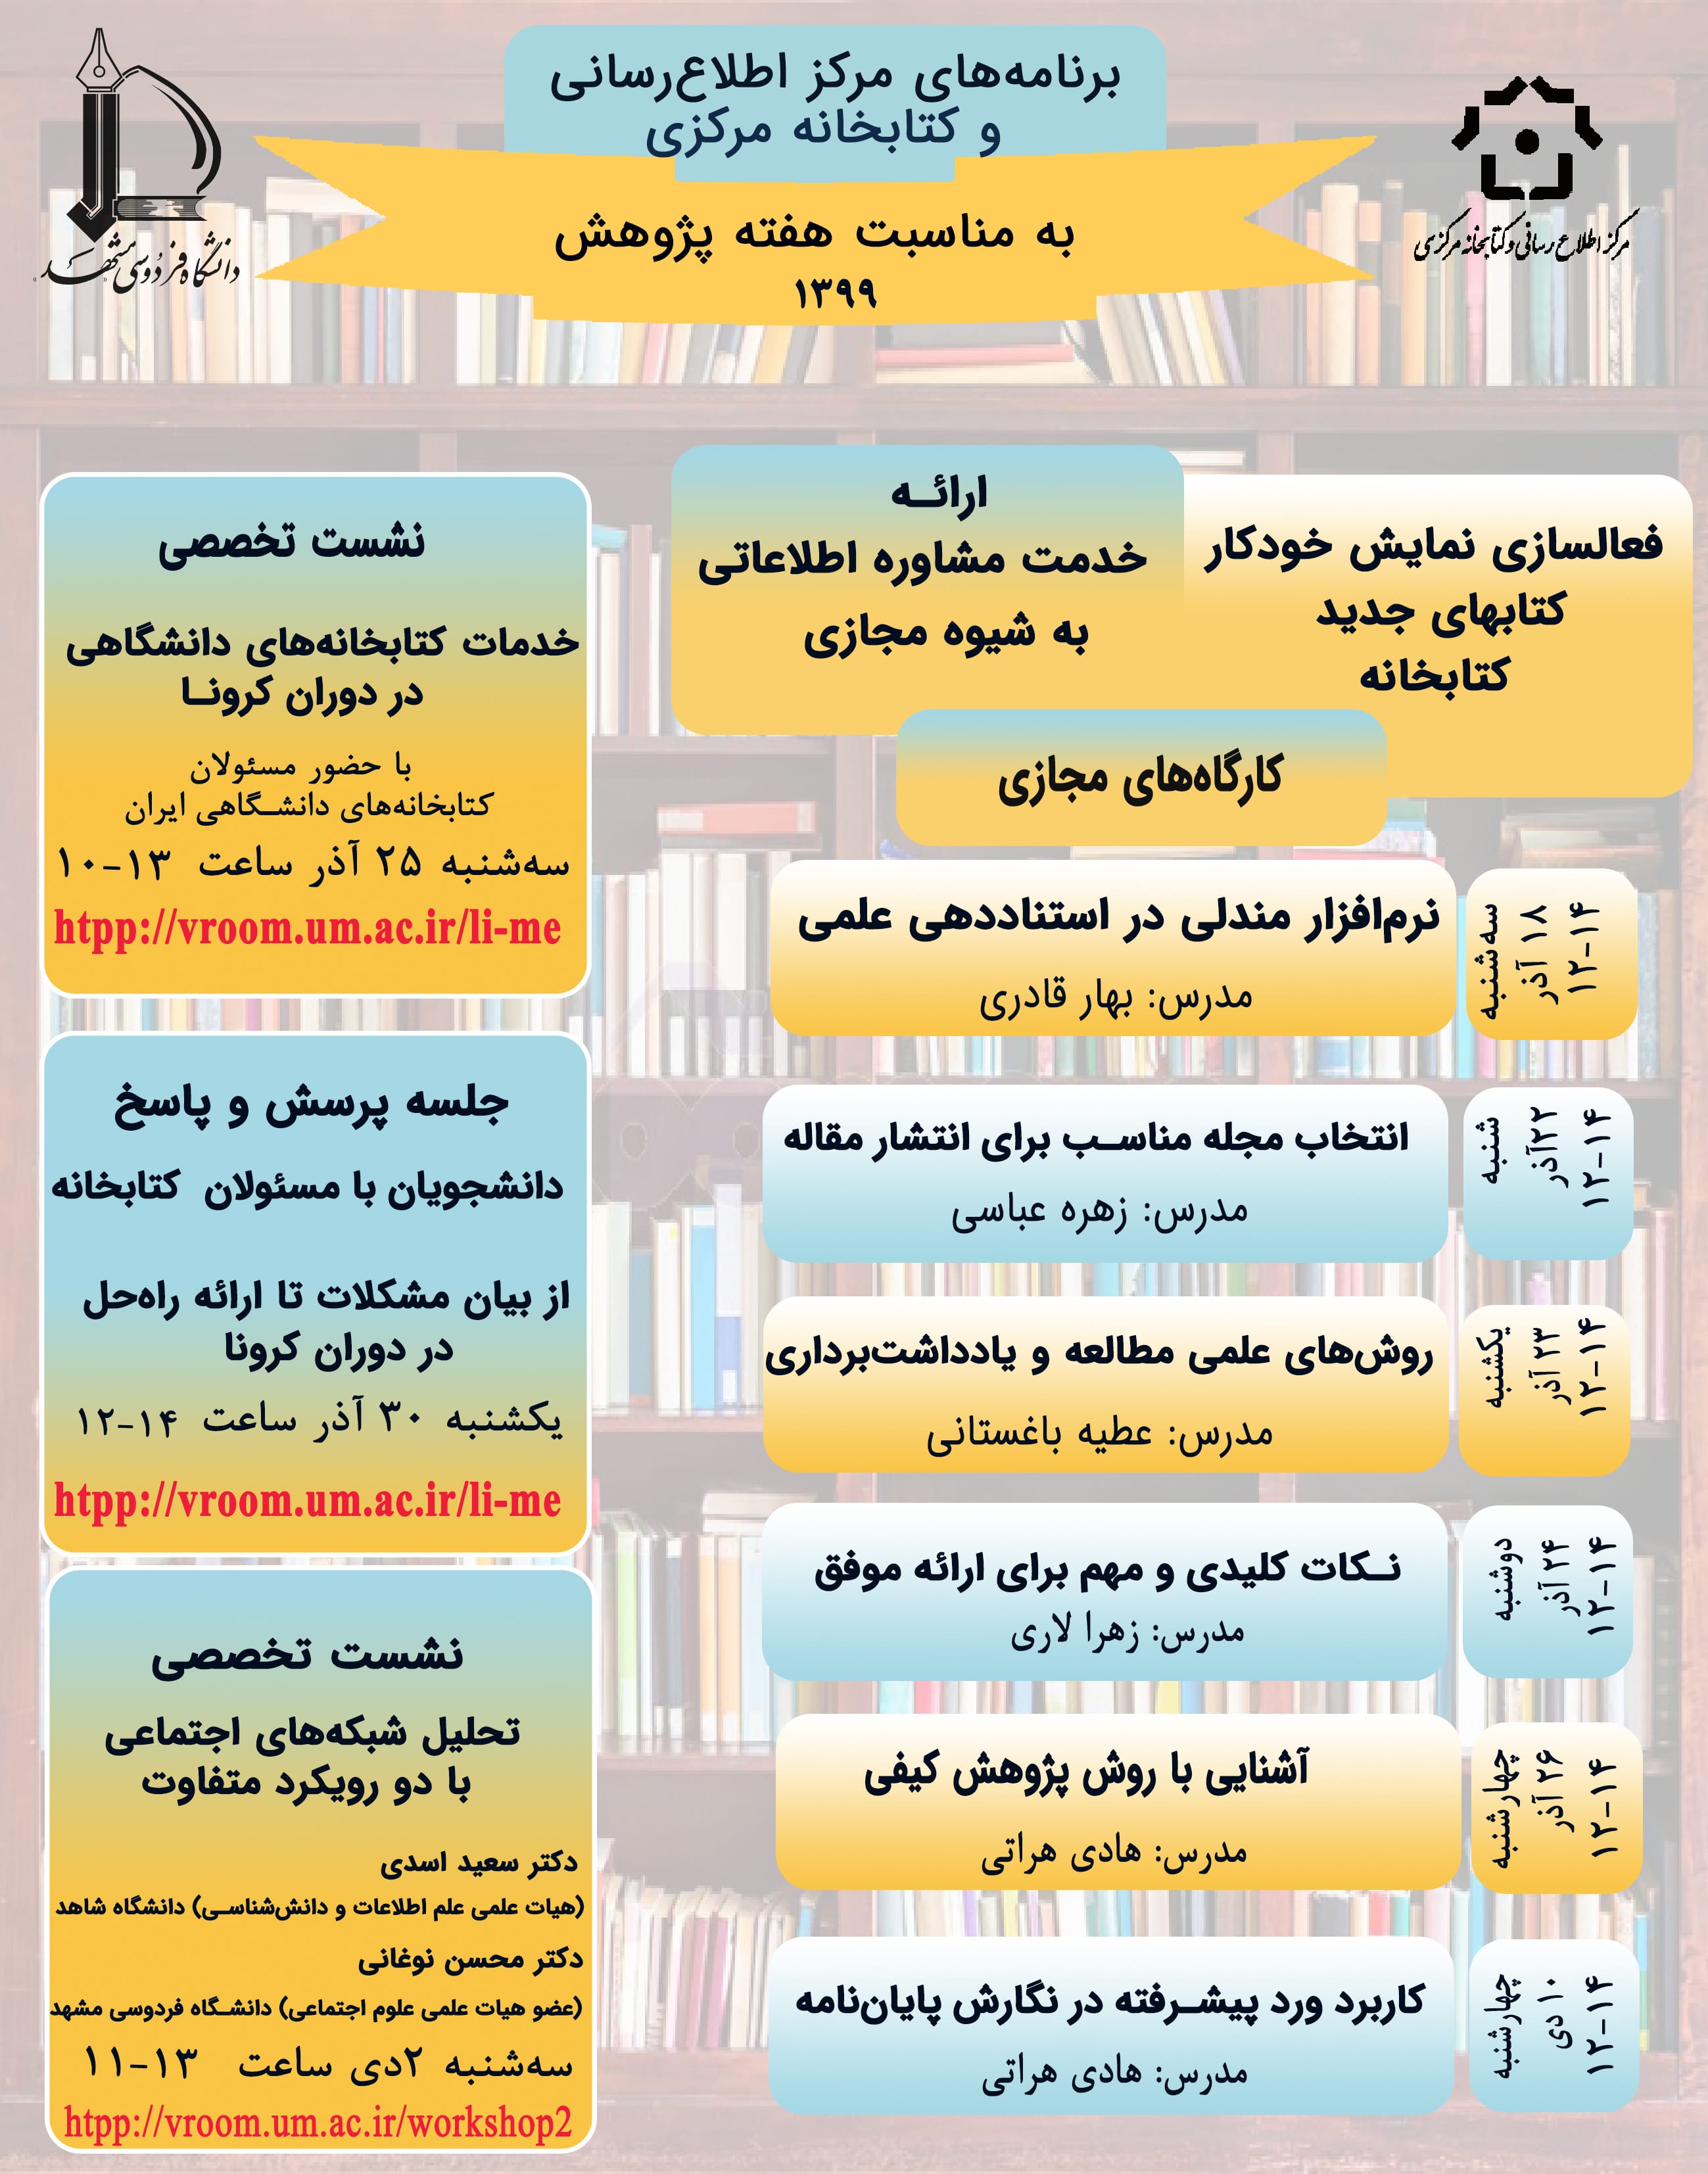 پوستر برنامه های کتابخانه در هفته پژوهش